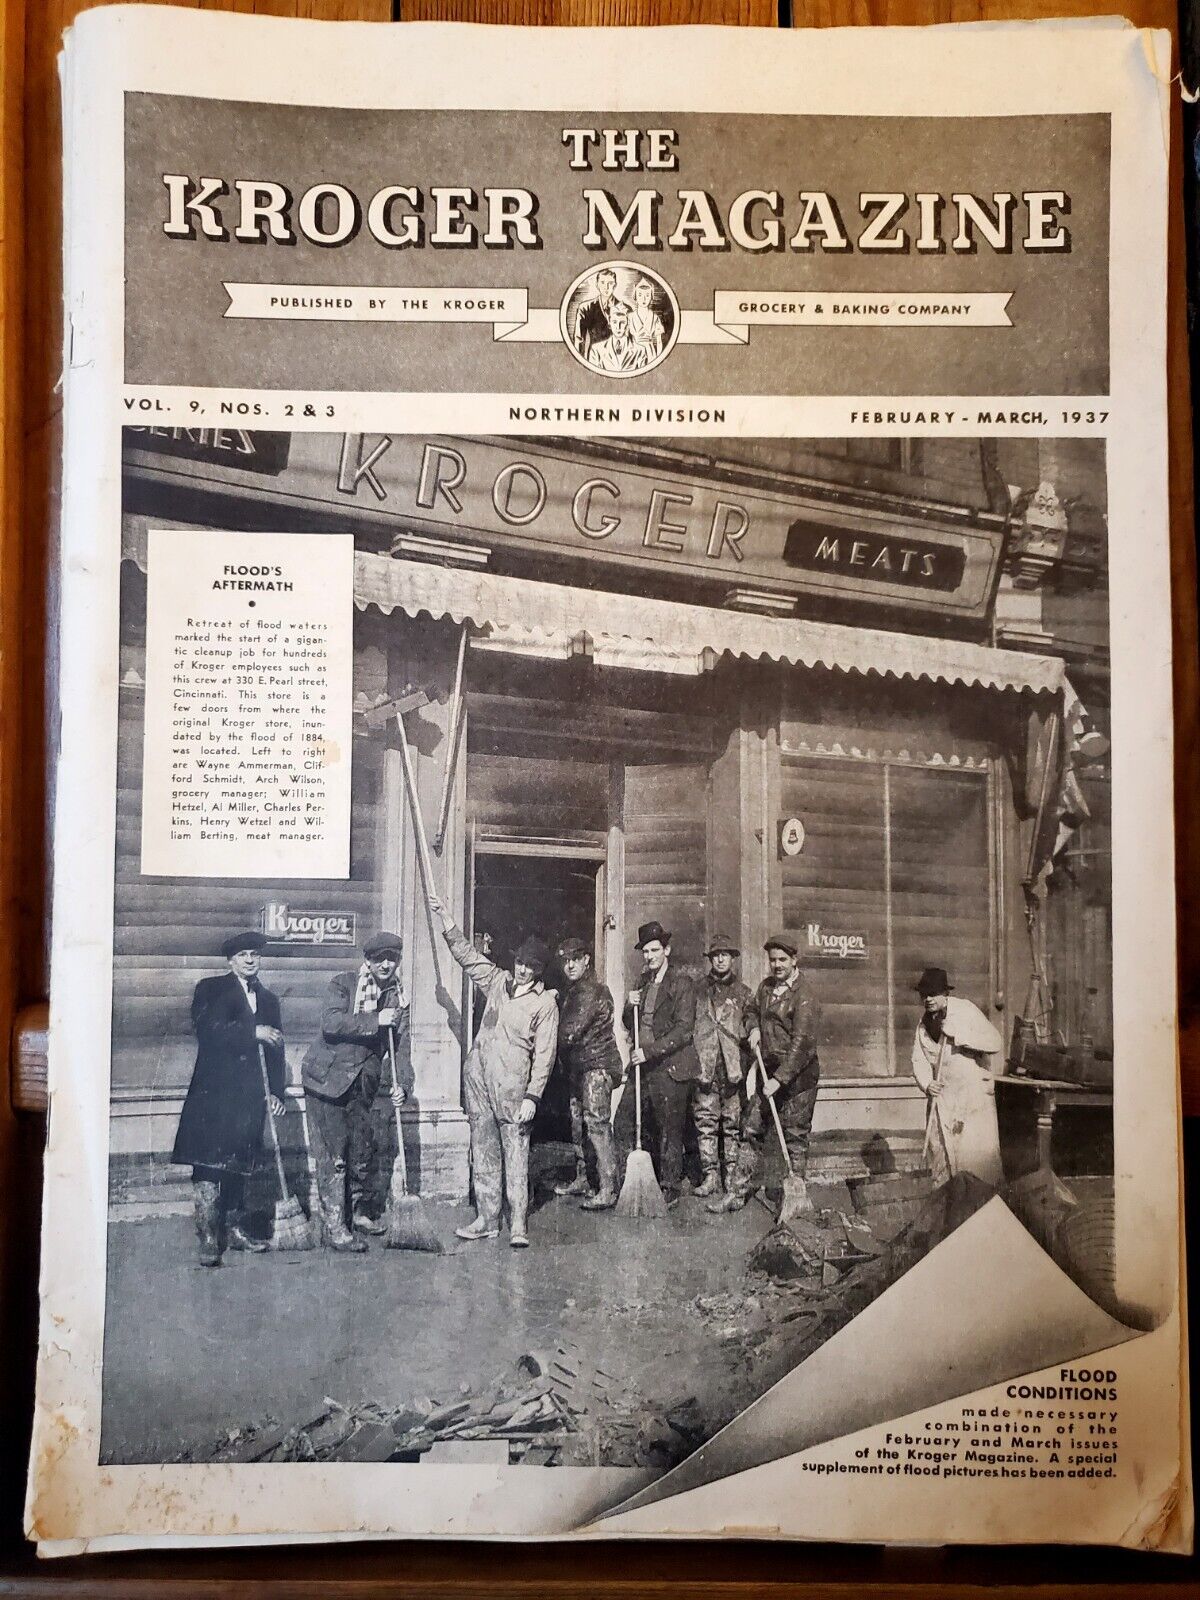 VINTAGE KROGER Grocery & Baking Co.  Magazine LOT 1936-1937